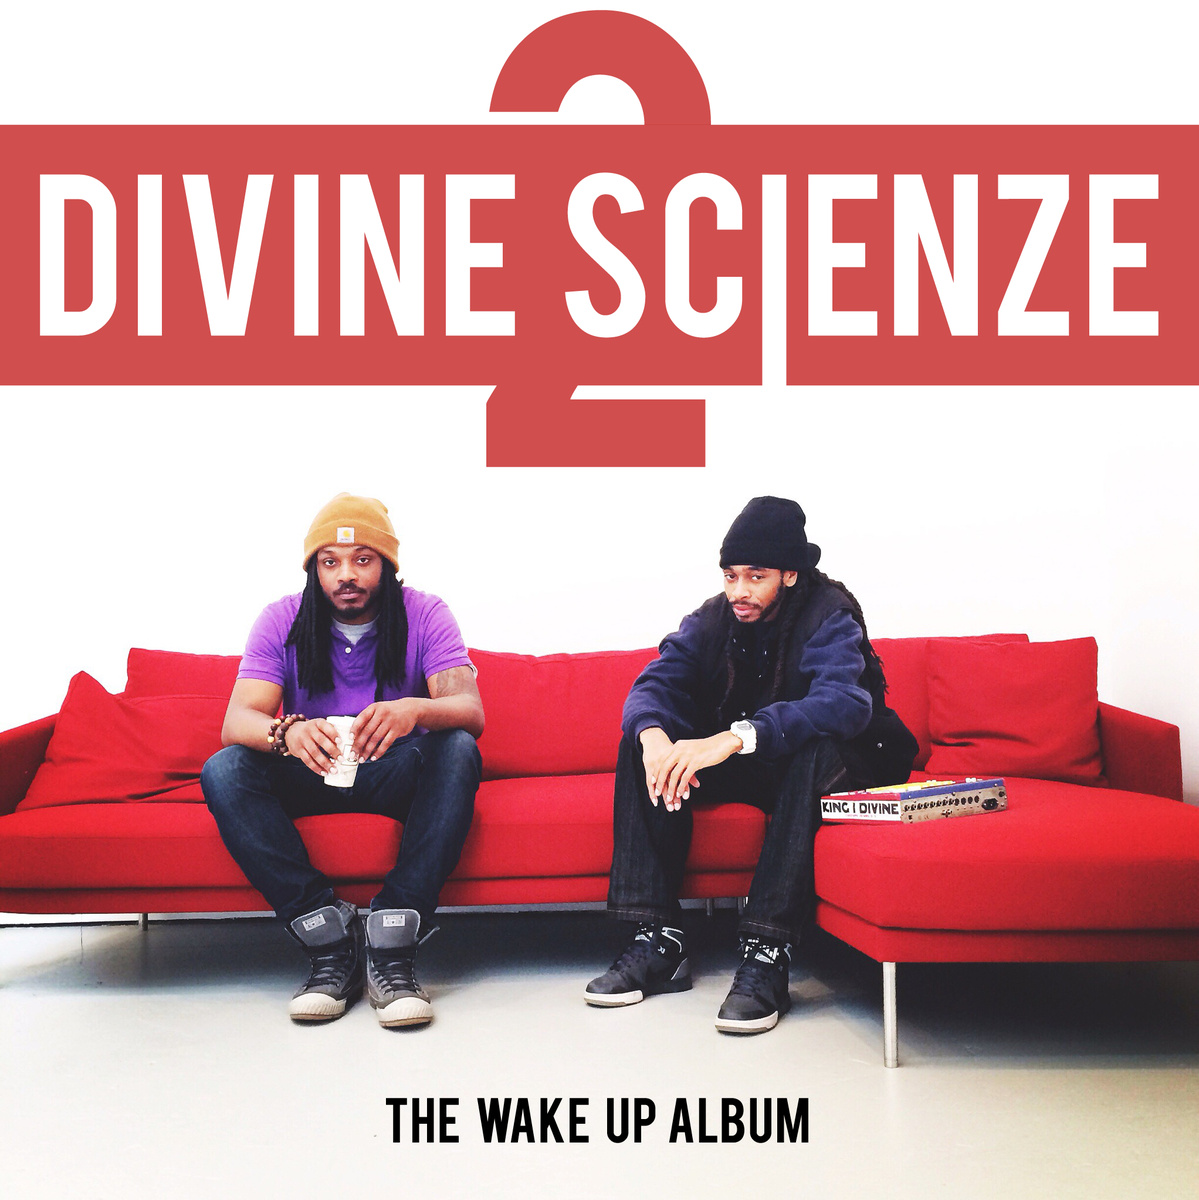 Divine ScienZe "Divine ScienZe 2: The Wake Up Album" Release | @DivineScienZe @dopeScienZe @KingiDivine